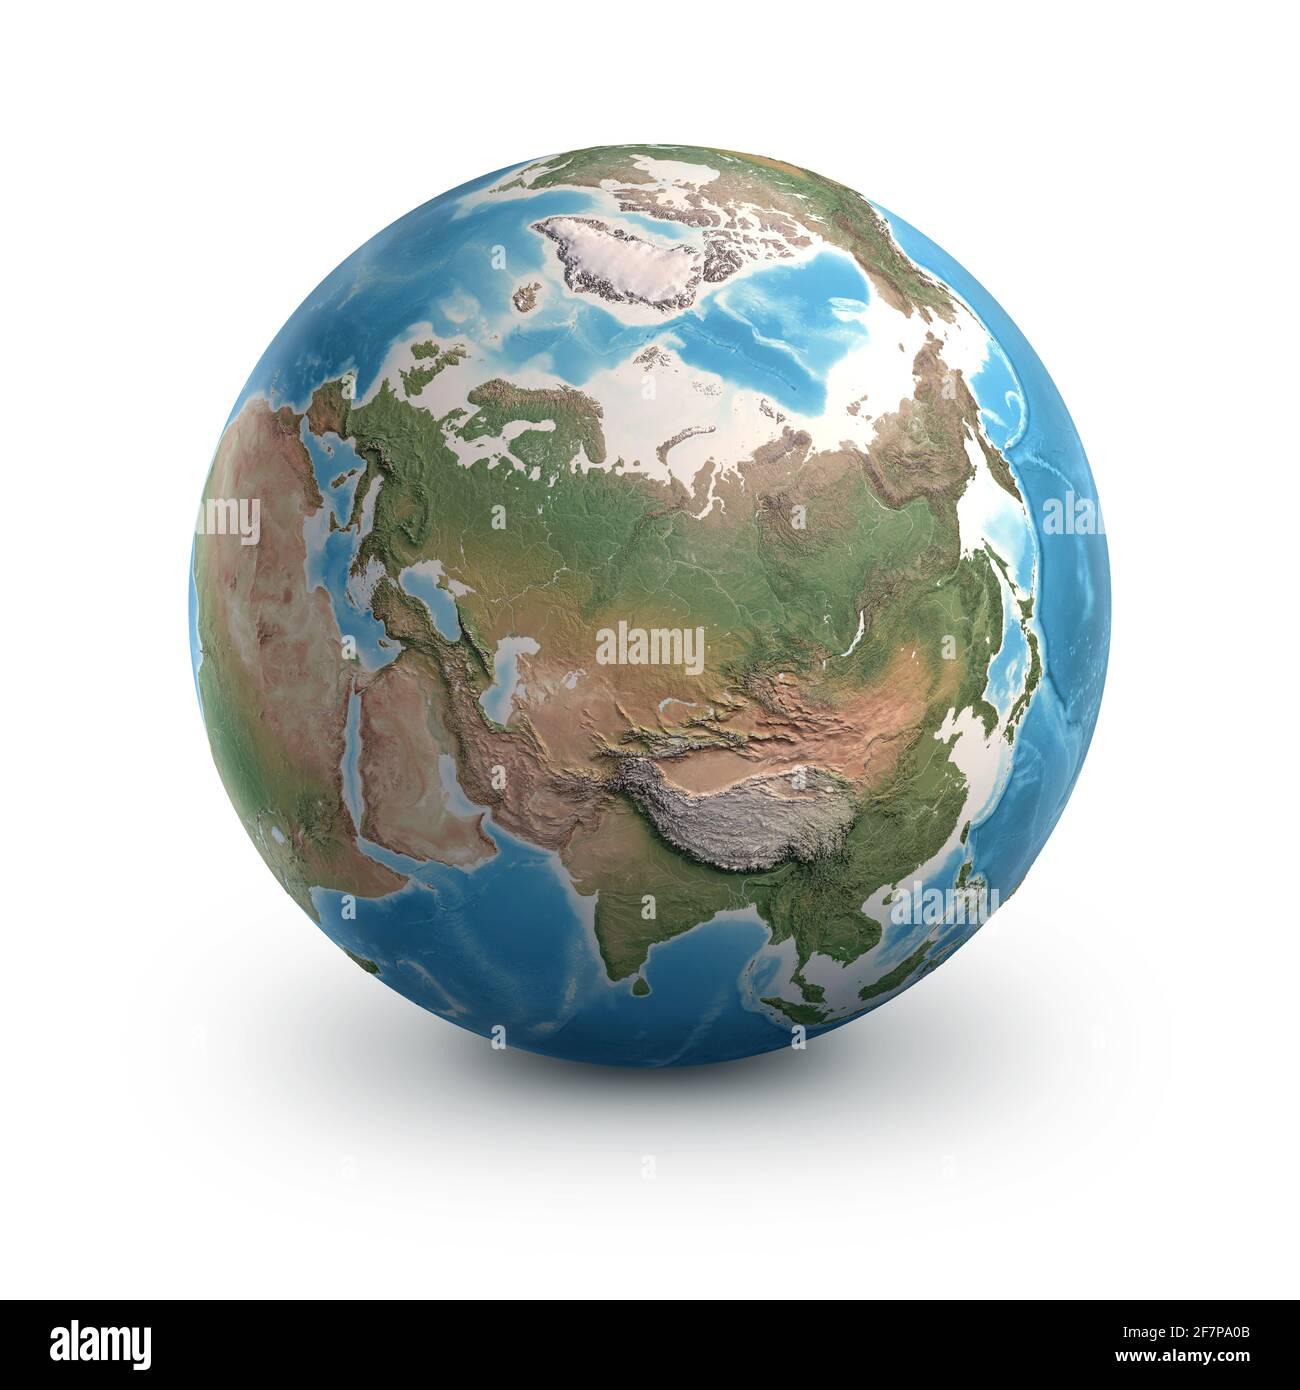 Planète Terre globe, isolée sur blanc. Géographie du monde de l'espace, axé sur la Russie et la région arctique - éléments fournis par la NASA Banque D'Images